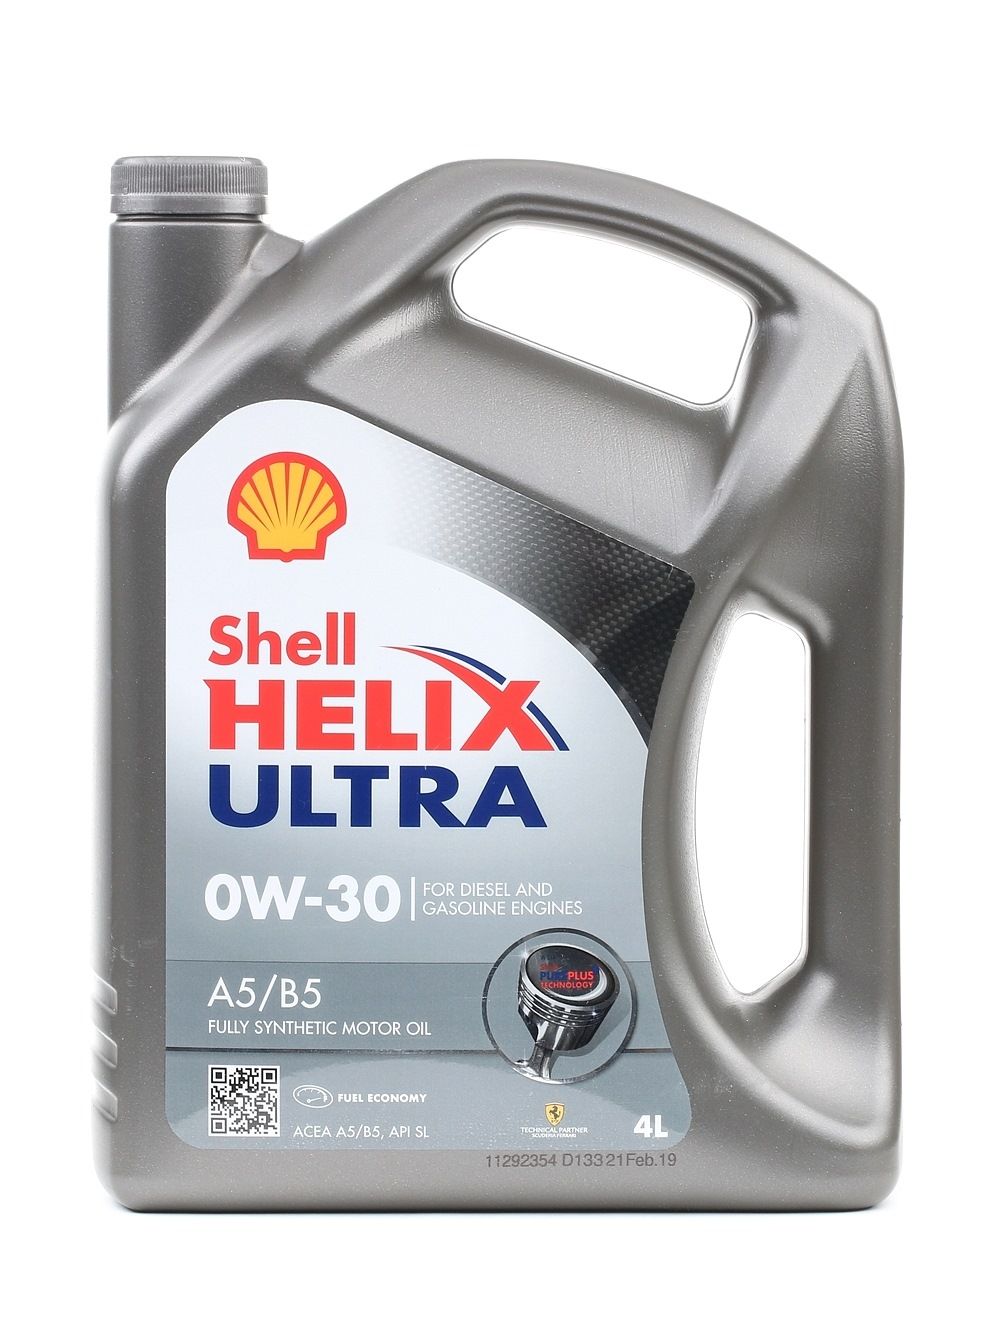 201510101210 SHELL Helix, Ultra A5/B5 0W-30, 4L Motorolie 550040651 koop goedkoop